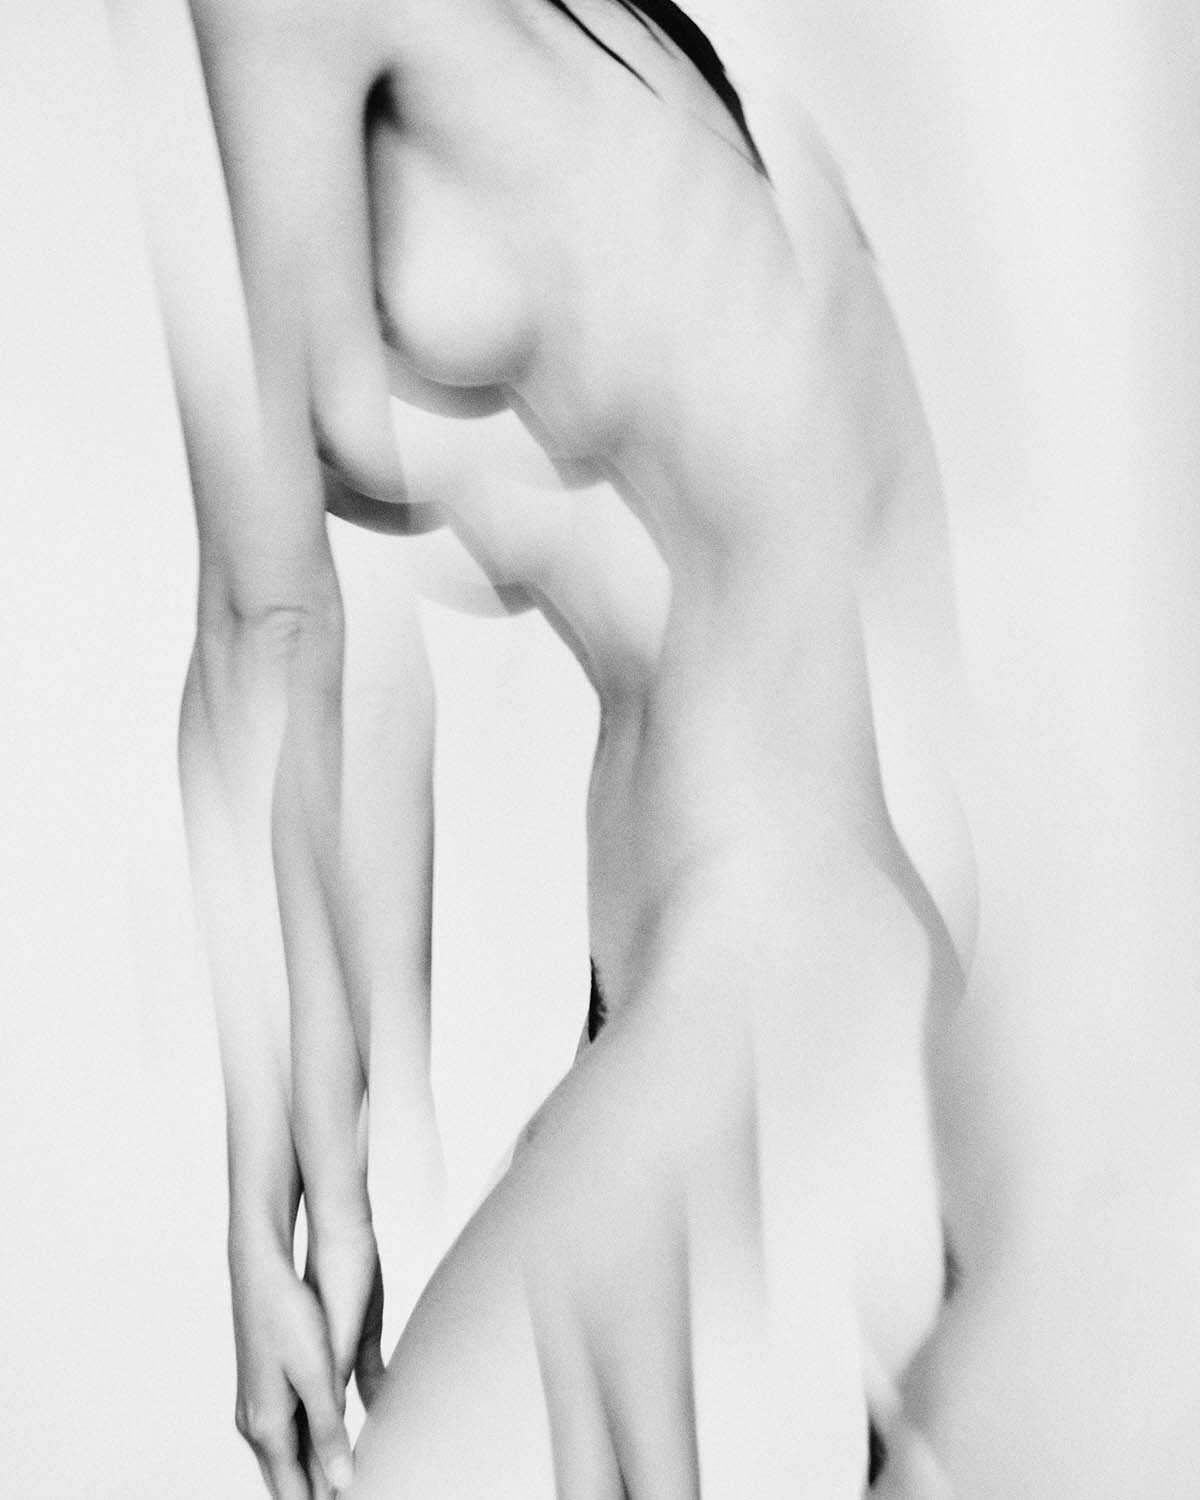 Η μουνάρα Rebecca Bagnol σε γυμνές φωτογραφίες